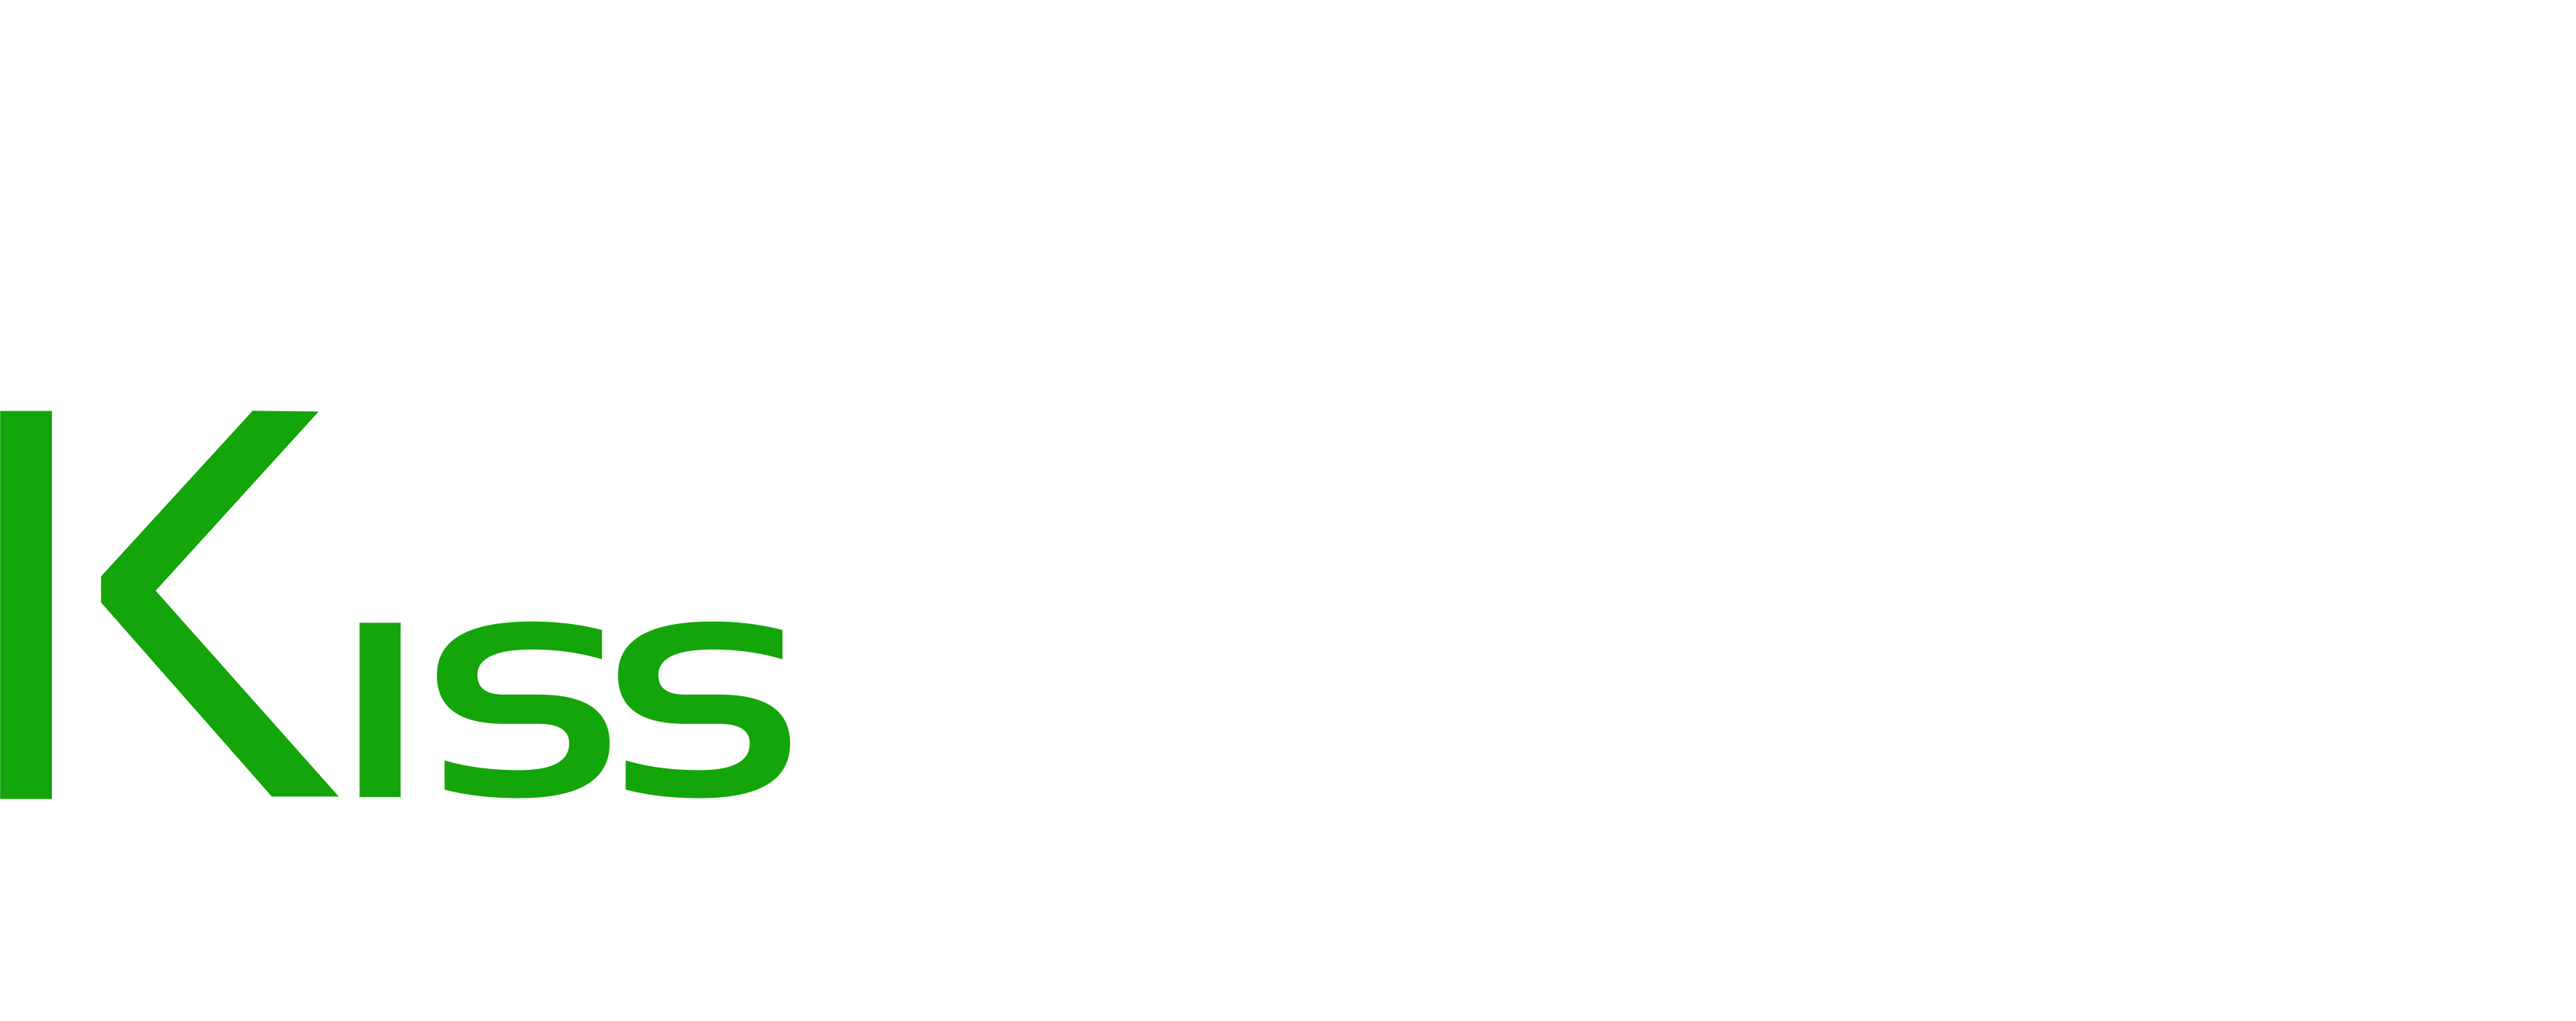 Car rental - Roadside Assistance - Kissrentacar +36203508888